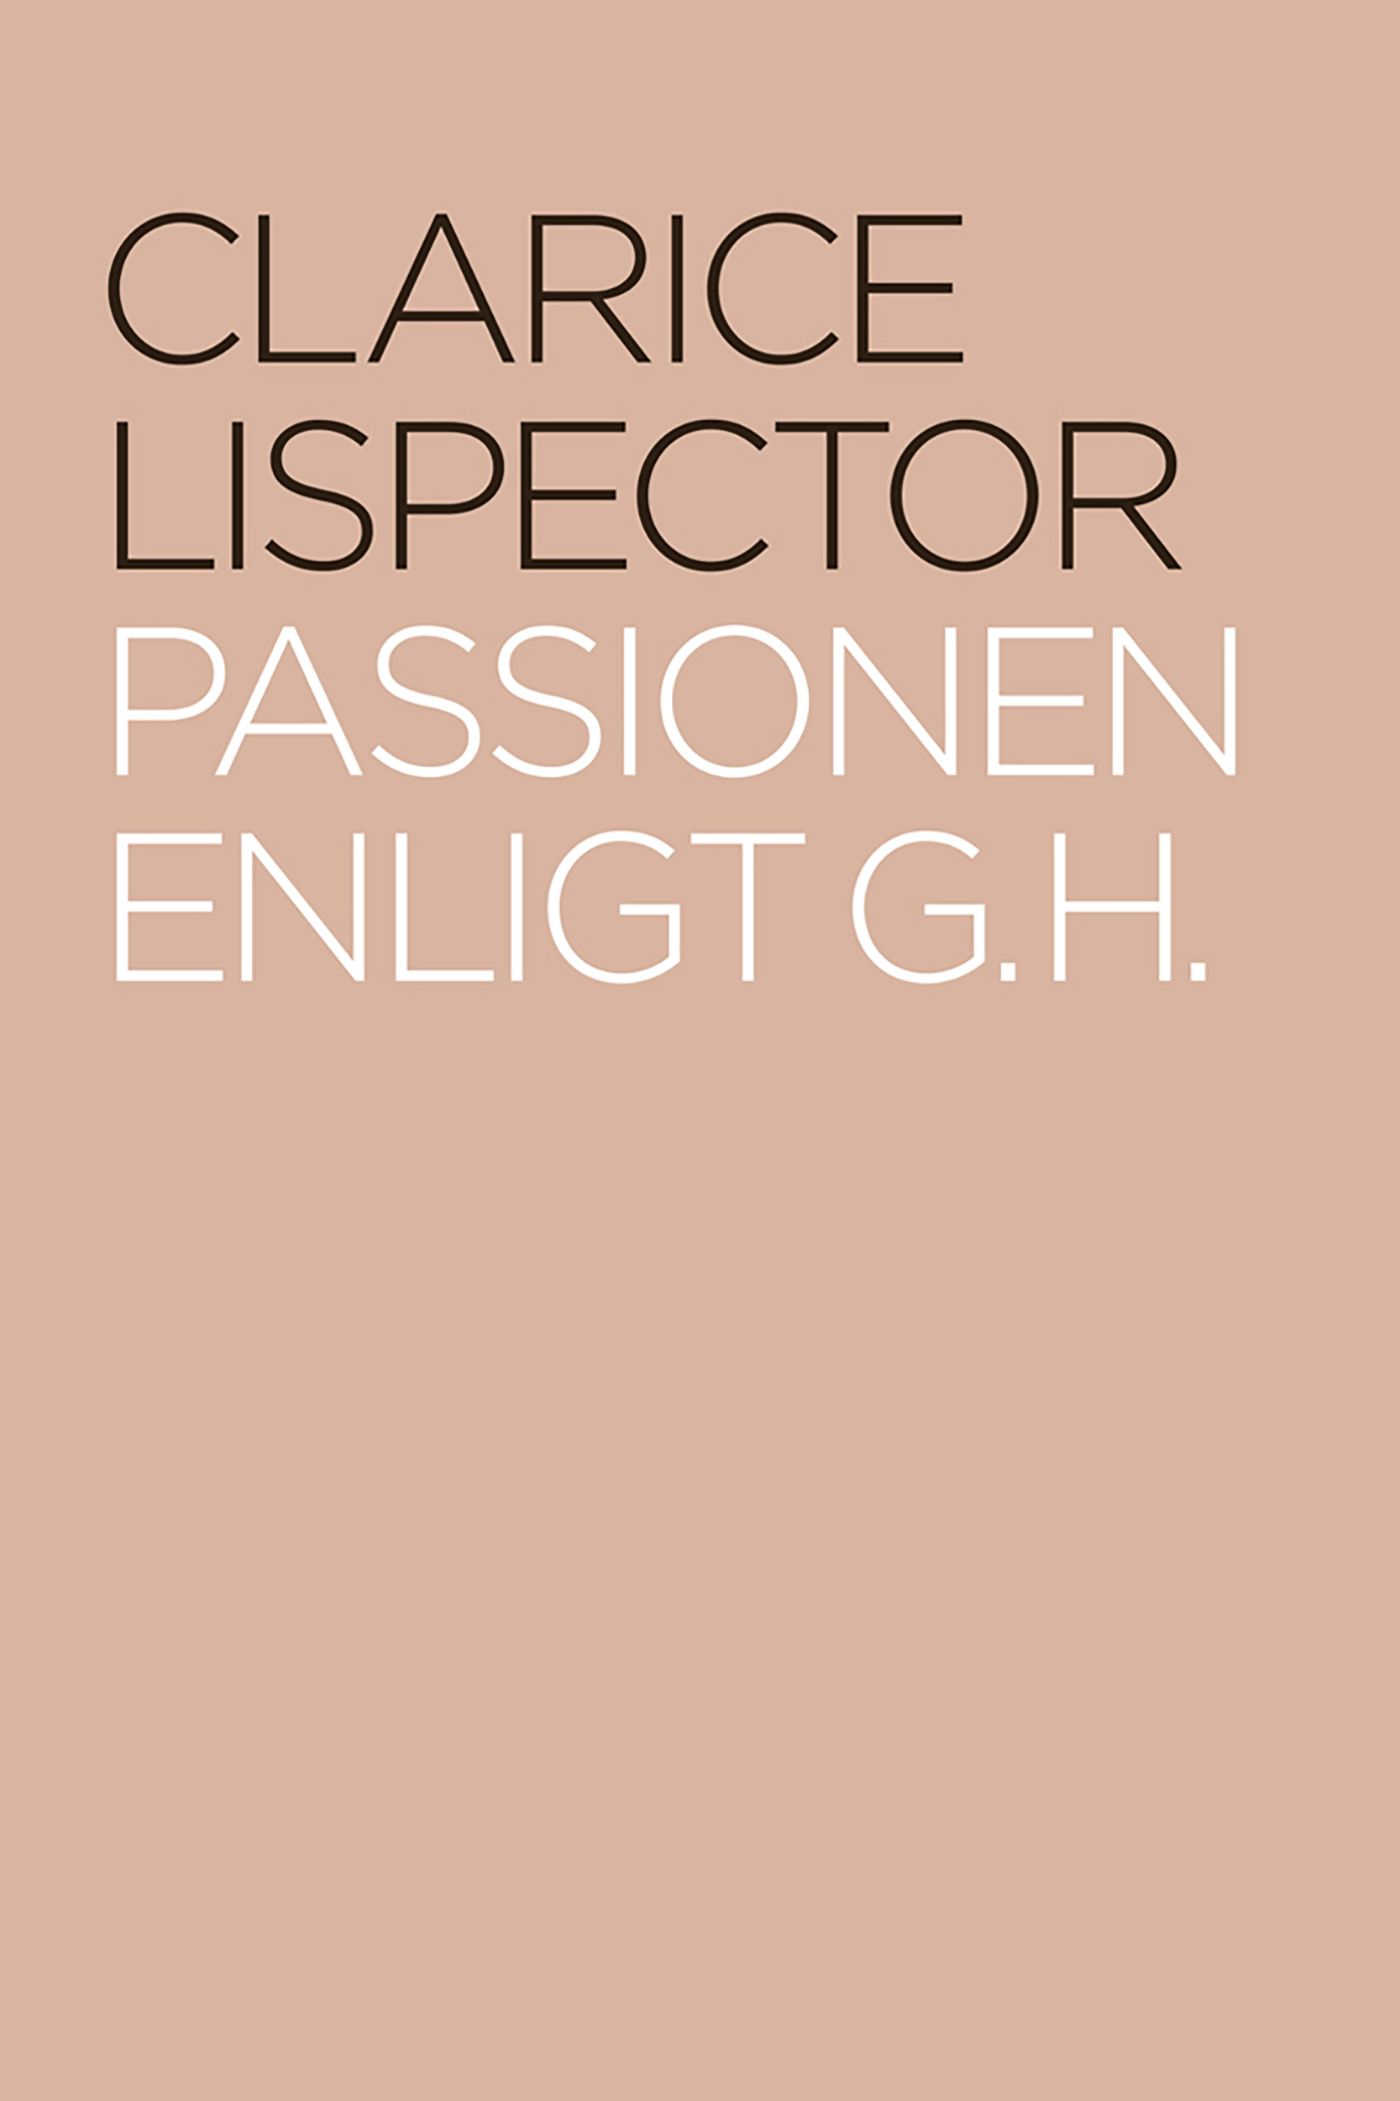 Passionen enligt G. H., eBook by Clarice Lispector